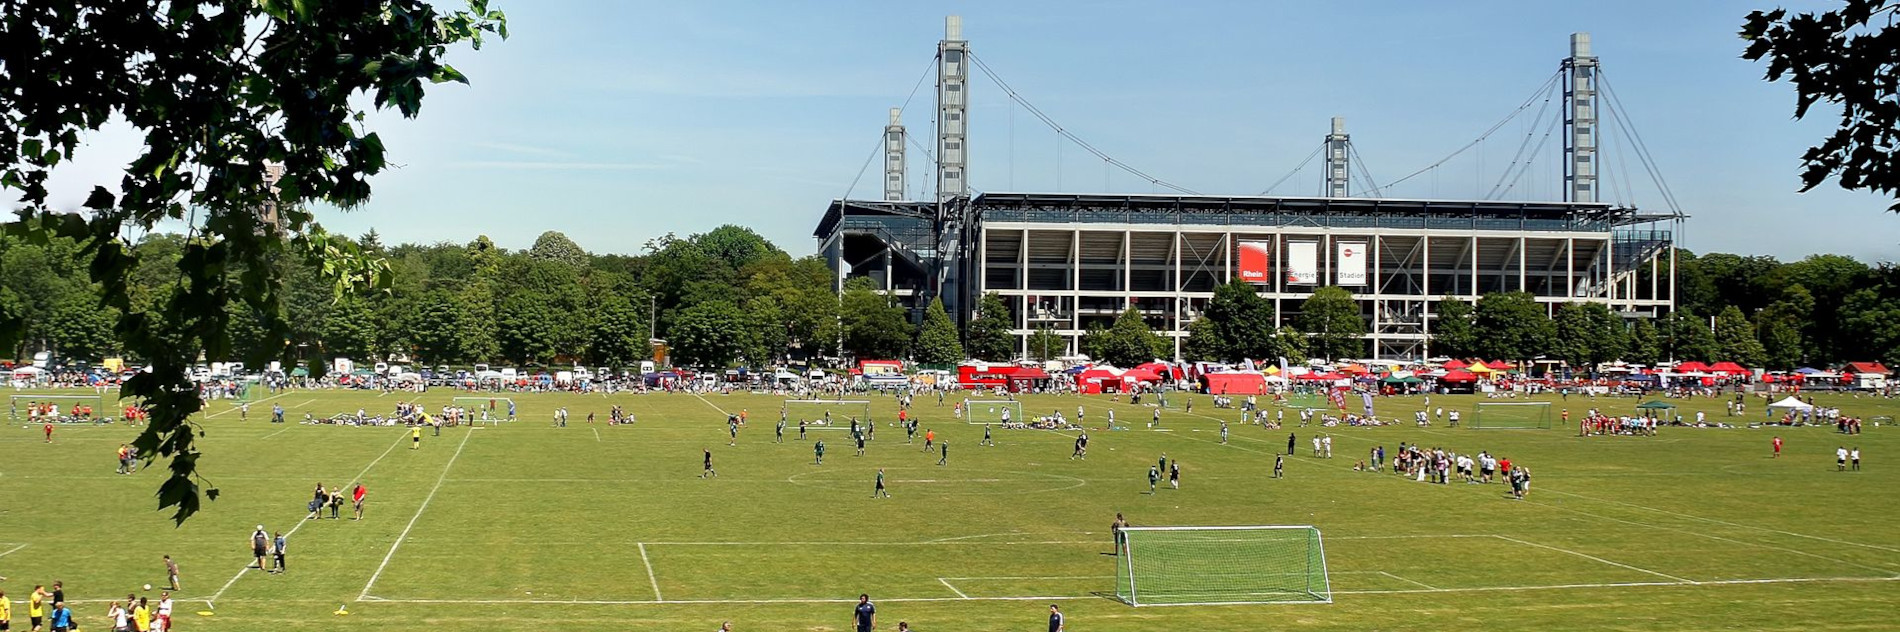 Blick auf die verschiedenen Fußballplätze des Kleinfeldturniers Come-Together-Cup. Im Hintergrund das Stadion in Köln-Müngersdorf.